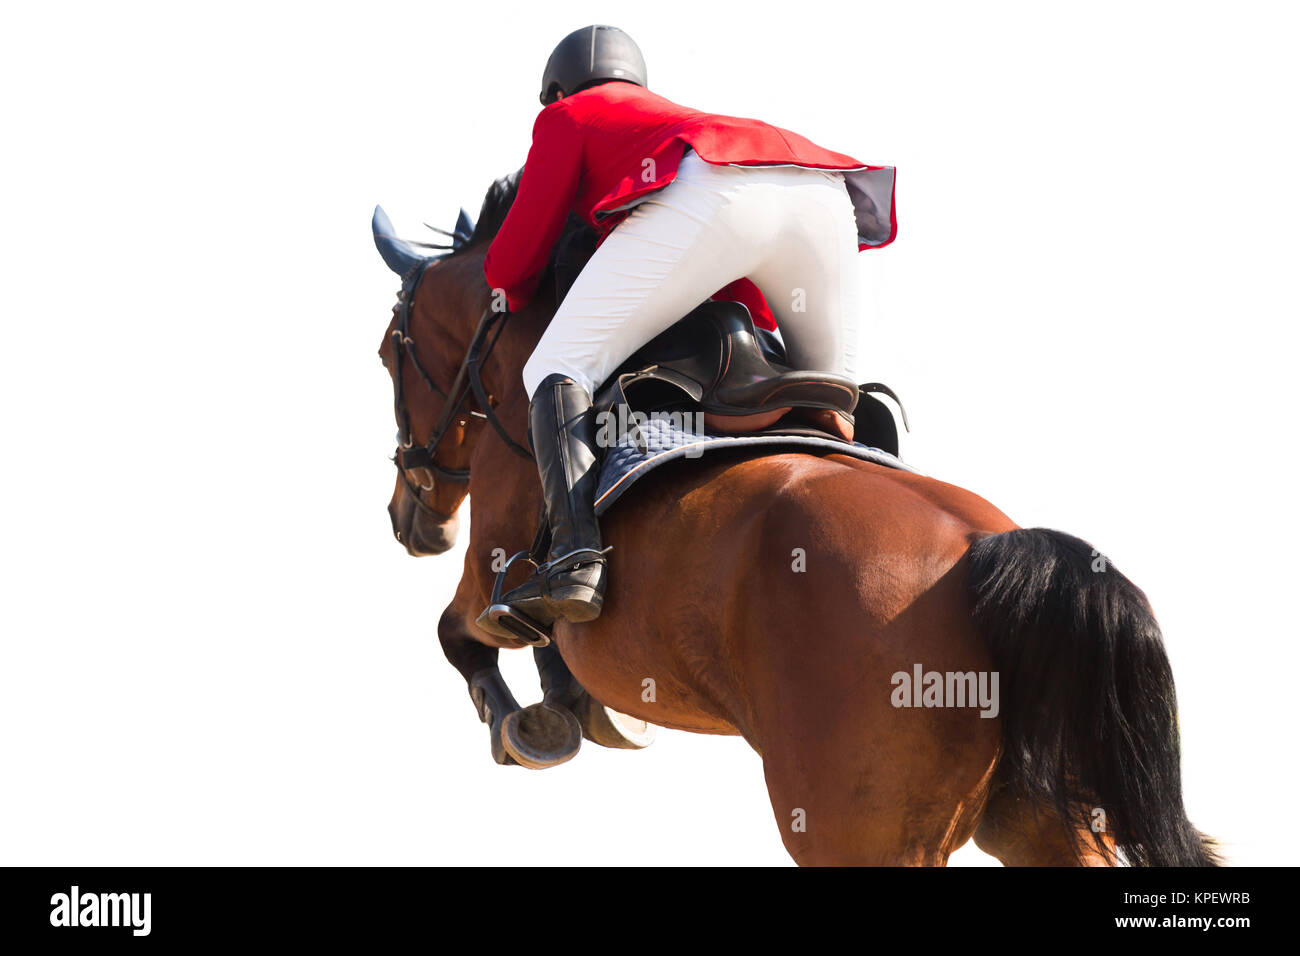 Sport Equestri, Ippico, evento isolato su sfondo bianco Foto Stock